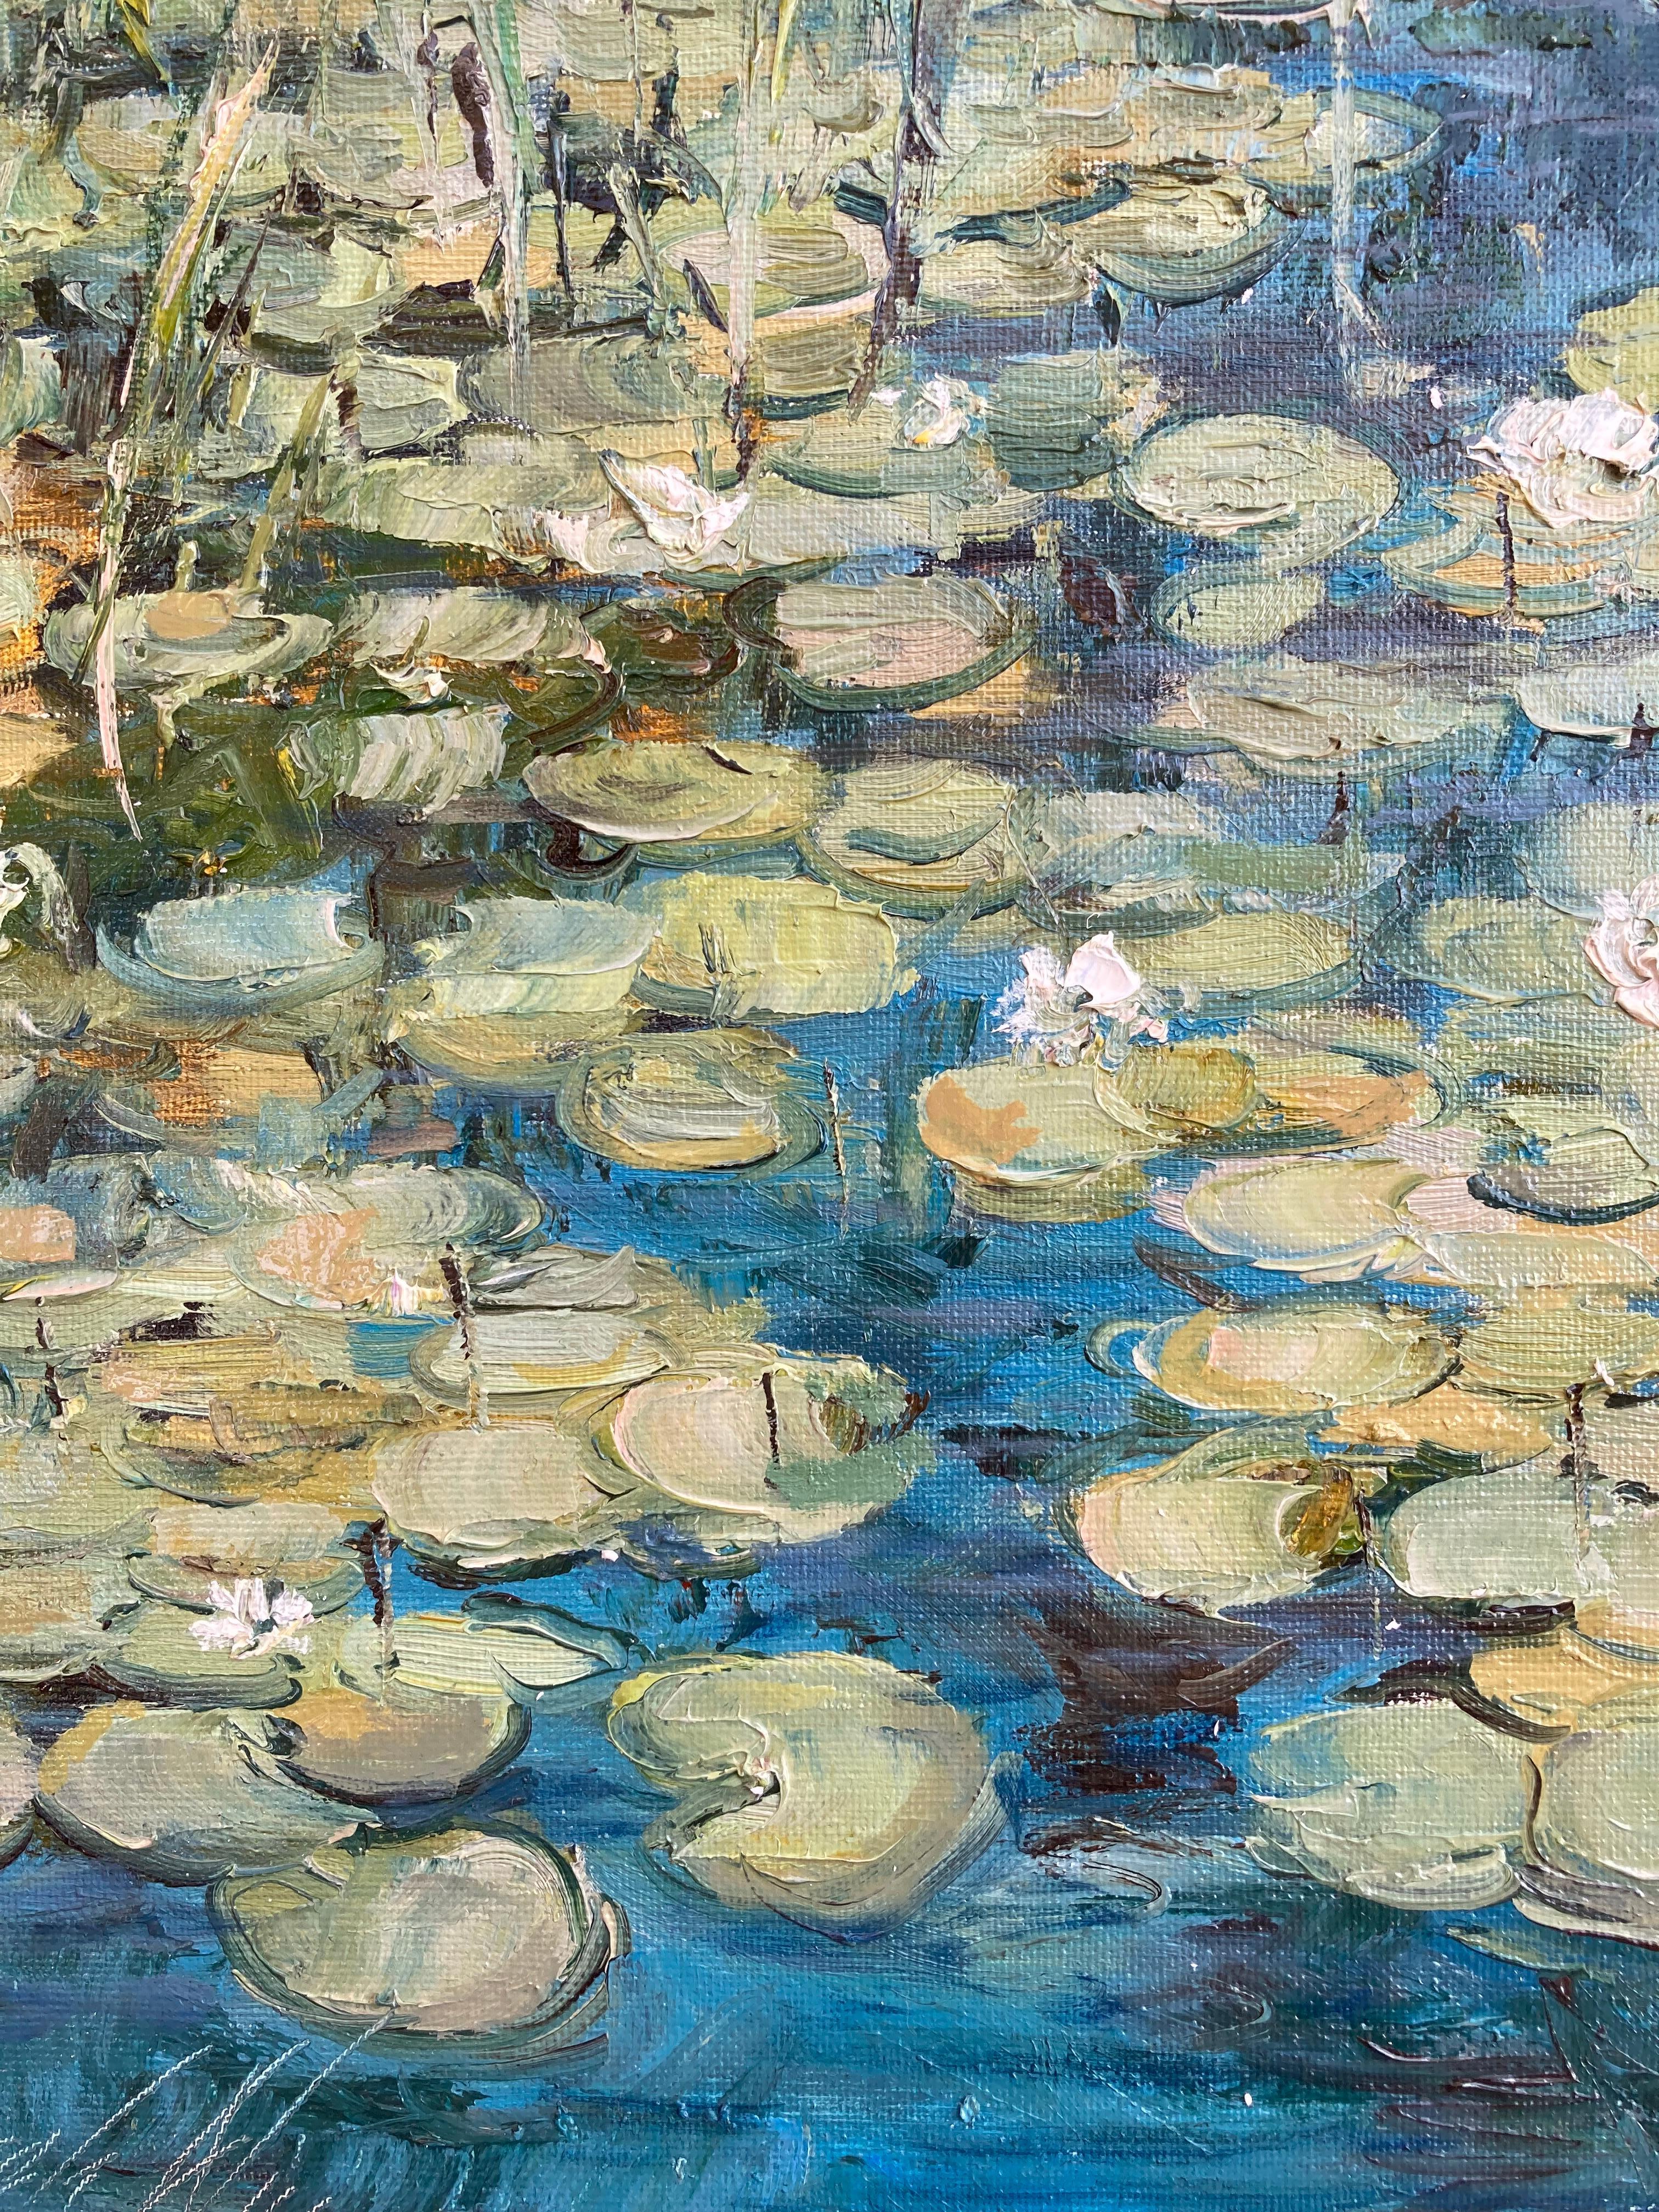 water lilies paintings